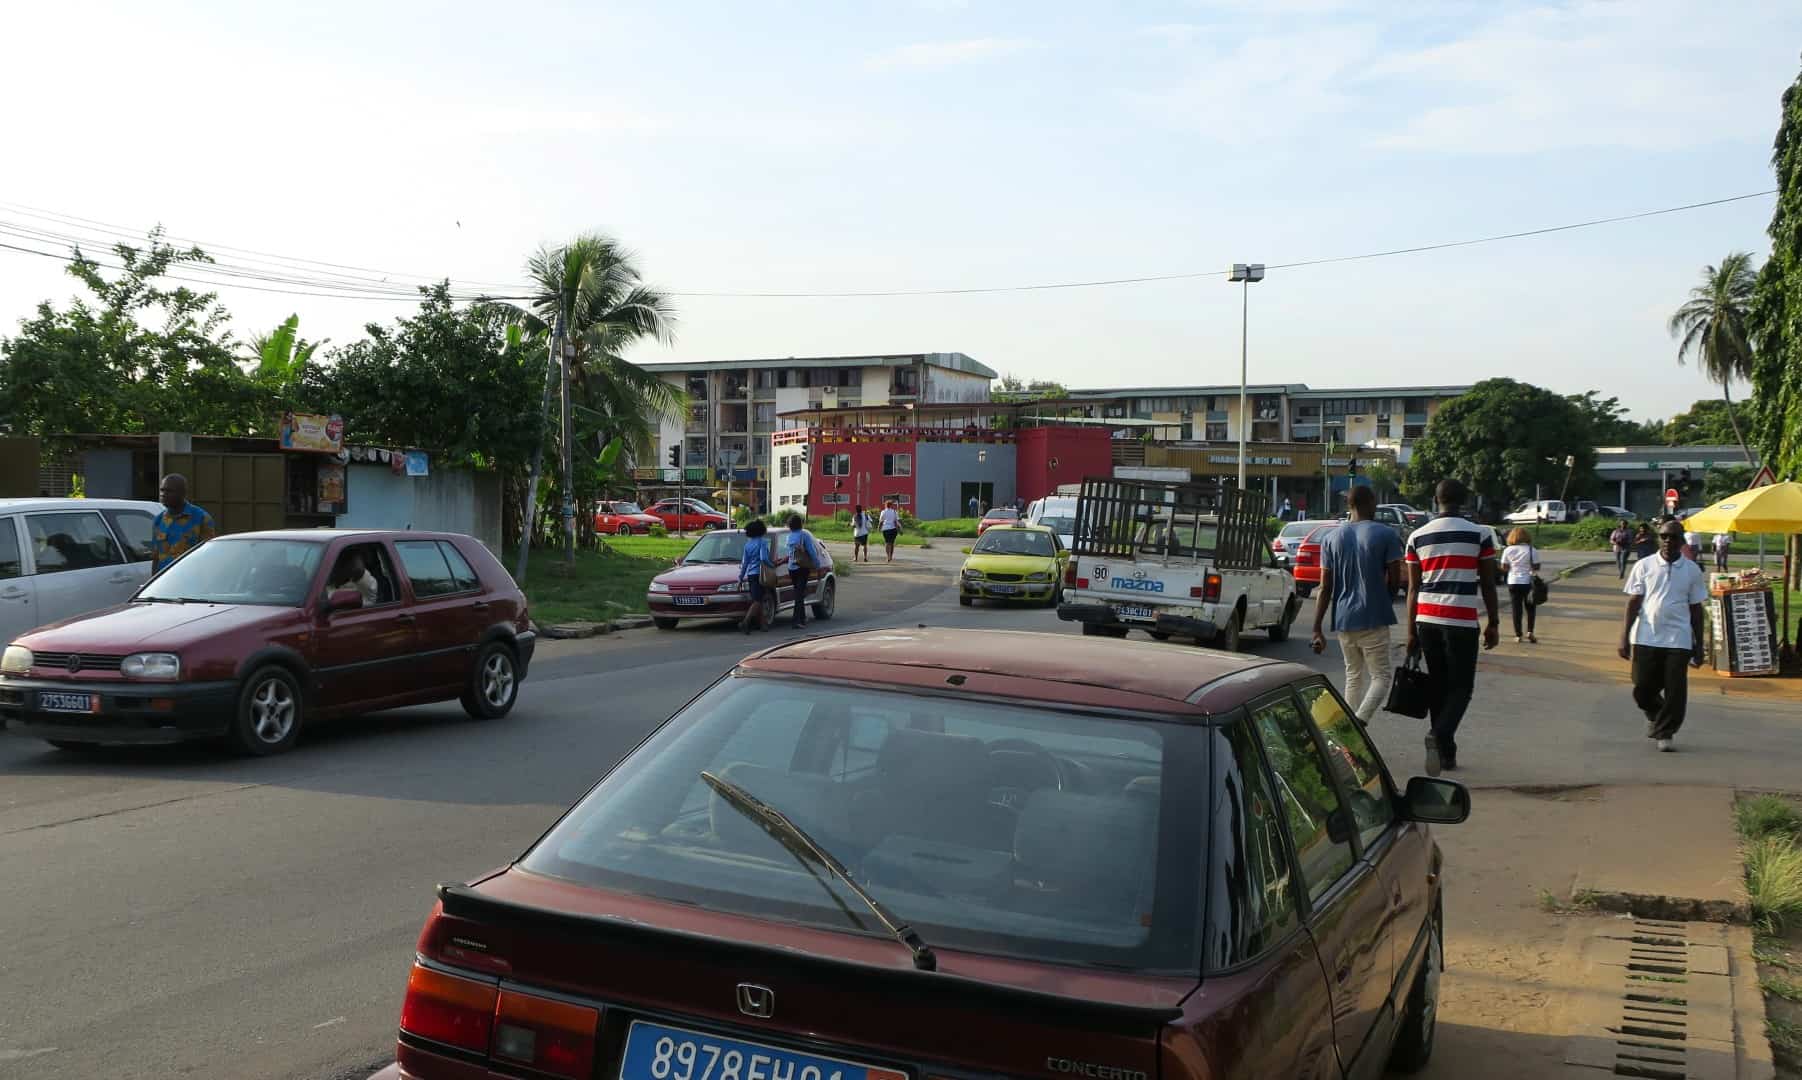 Straße in Abidjan - Elfenbeinküste